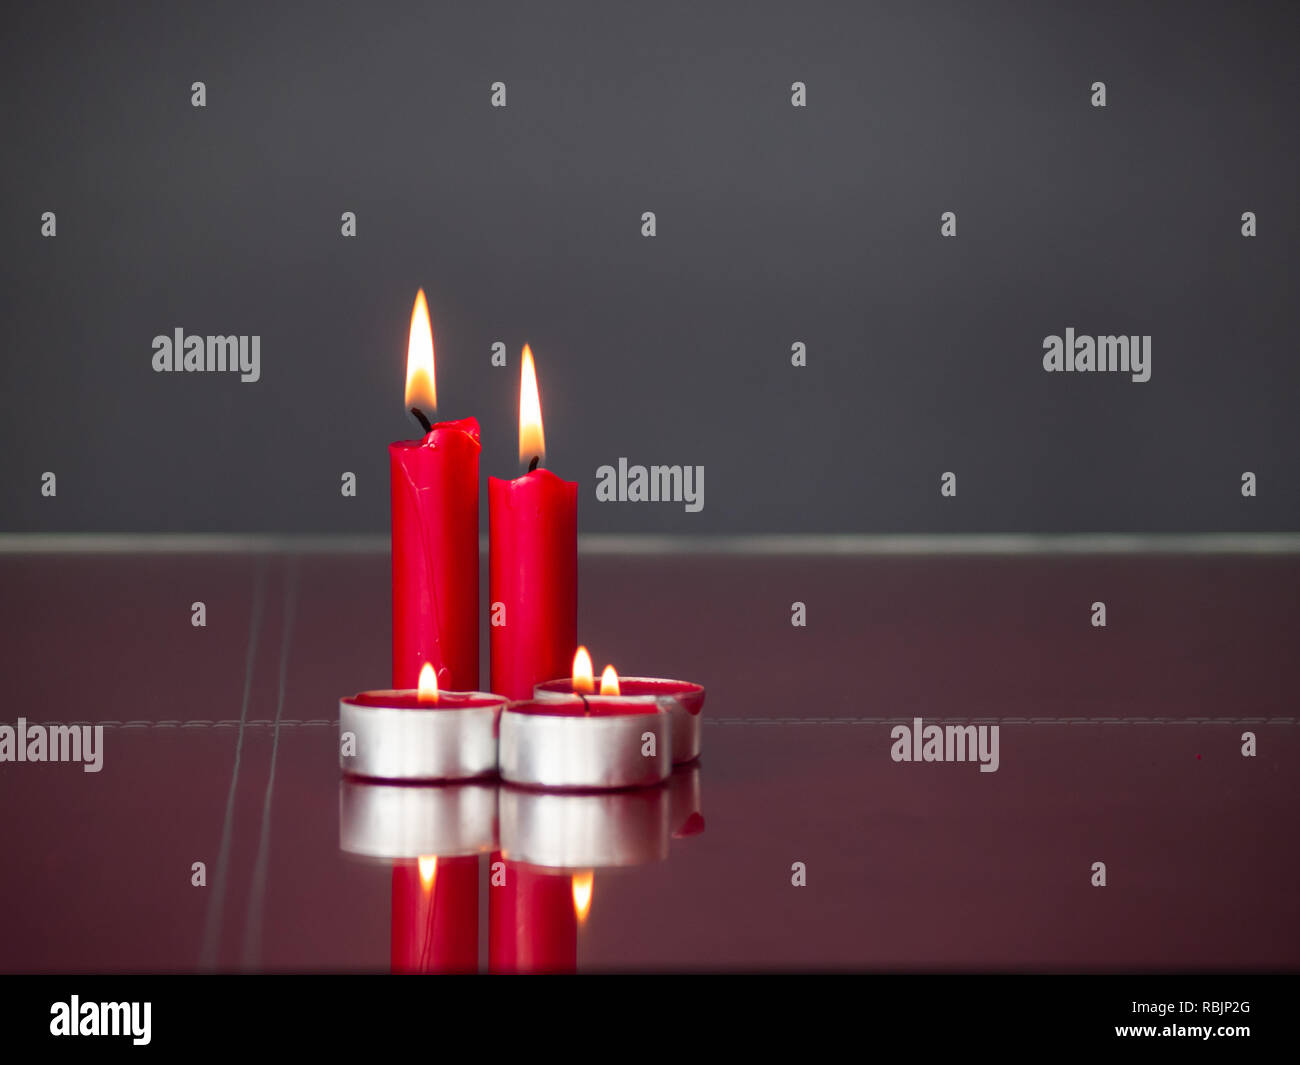 Concetto di amore candele rosse accese con sfondo grigio Foto Stock